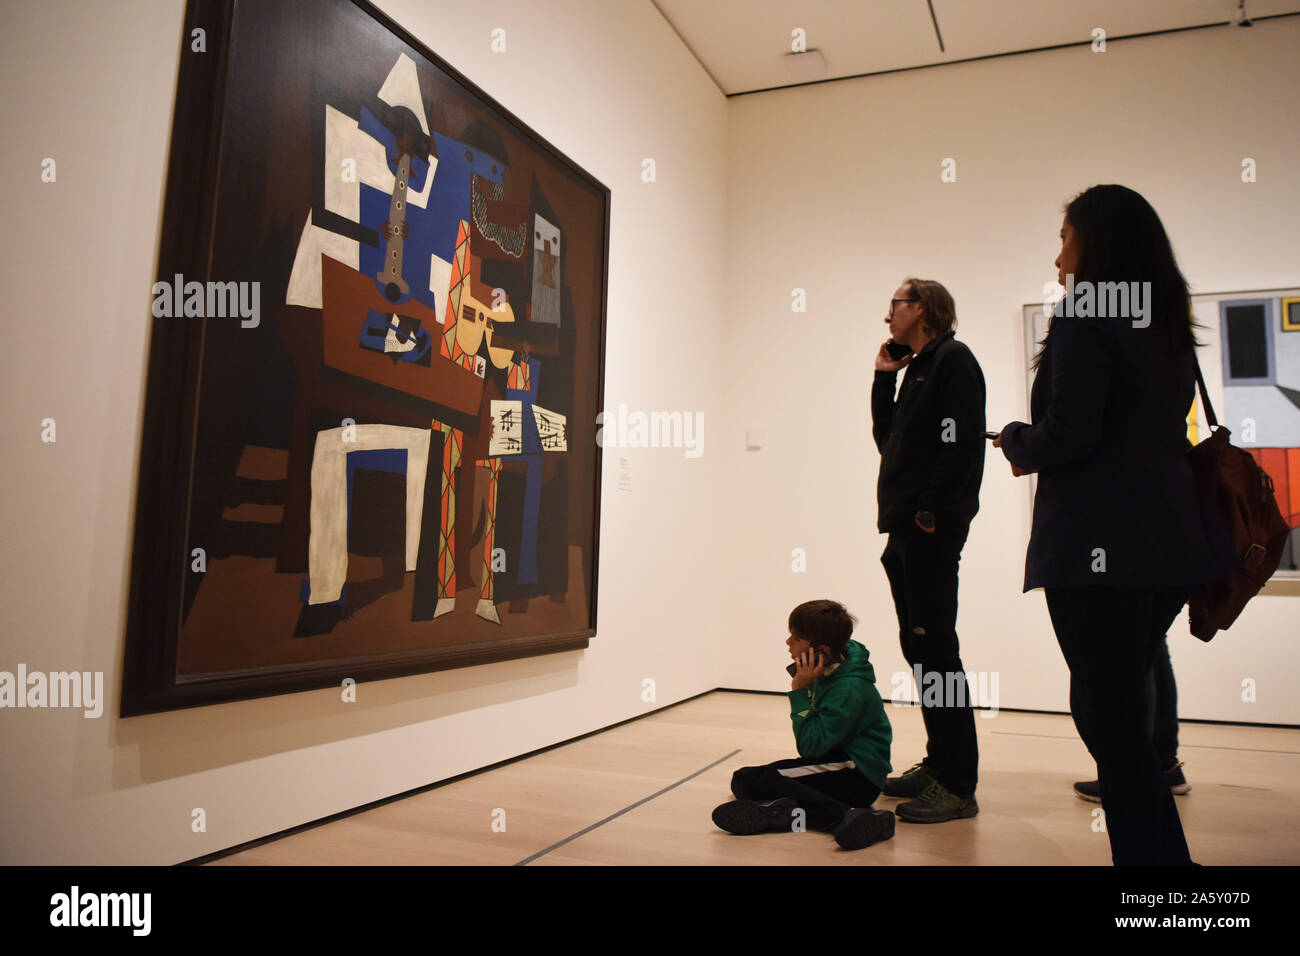 Nueva York, Estados Unidos. 22 Oct, 2019. Los visitantes ver la pintura  tres músicos del artista español Pablo Picasso en el Museo de Arte Moderno  (MoMA) de Manhattan de Nueva York, Estados